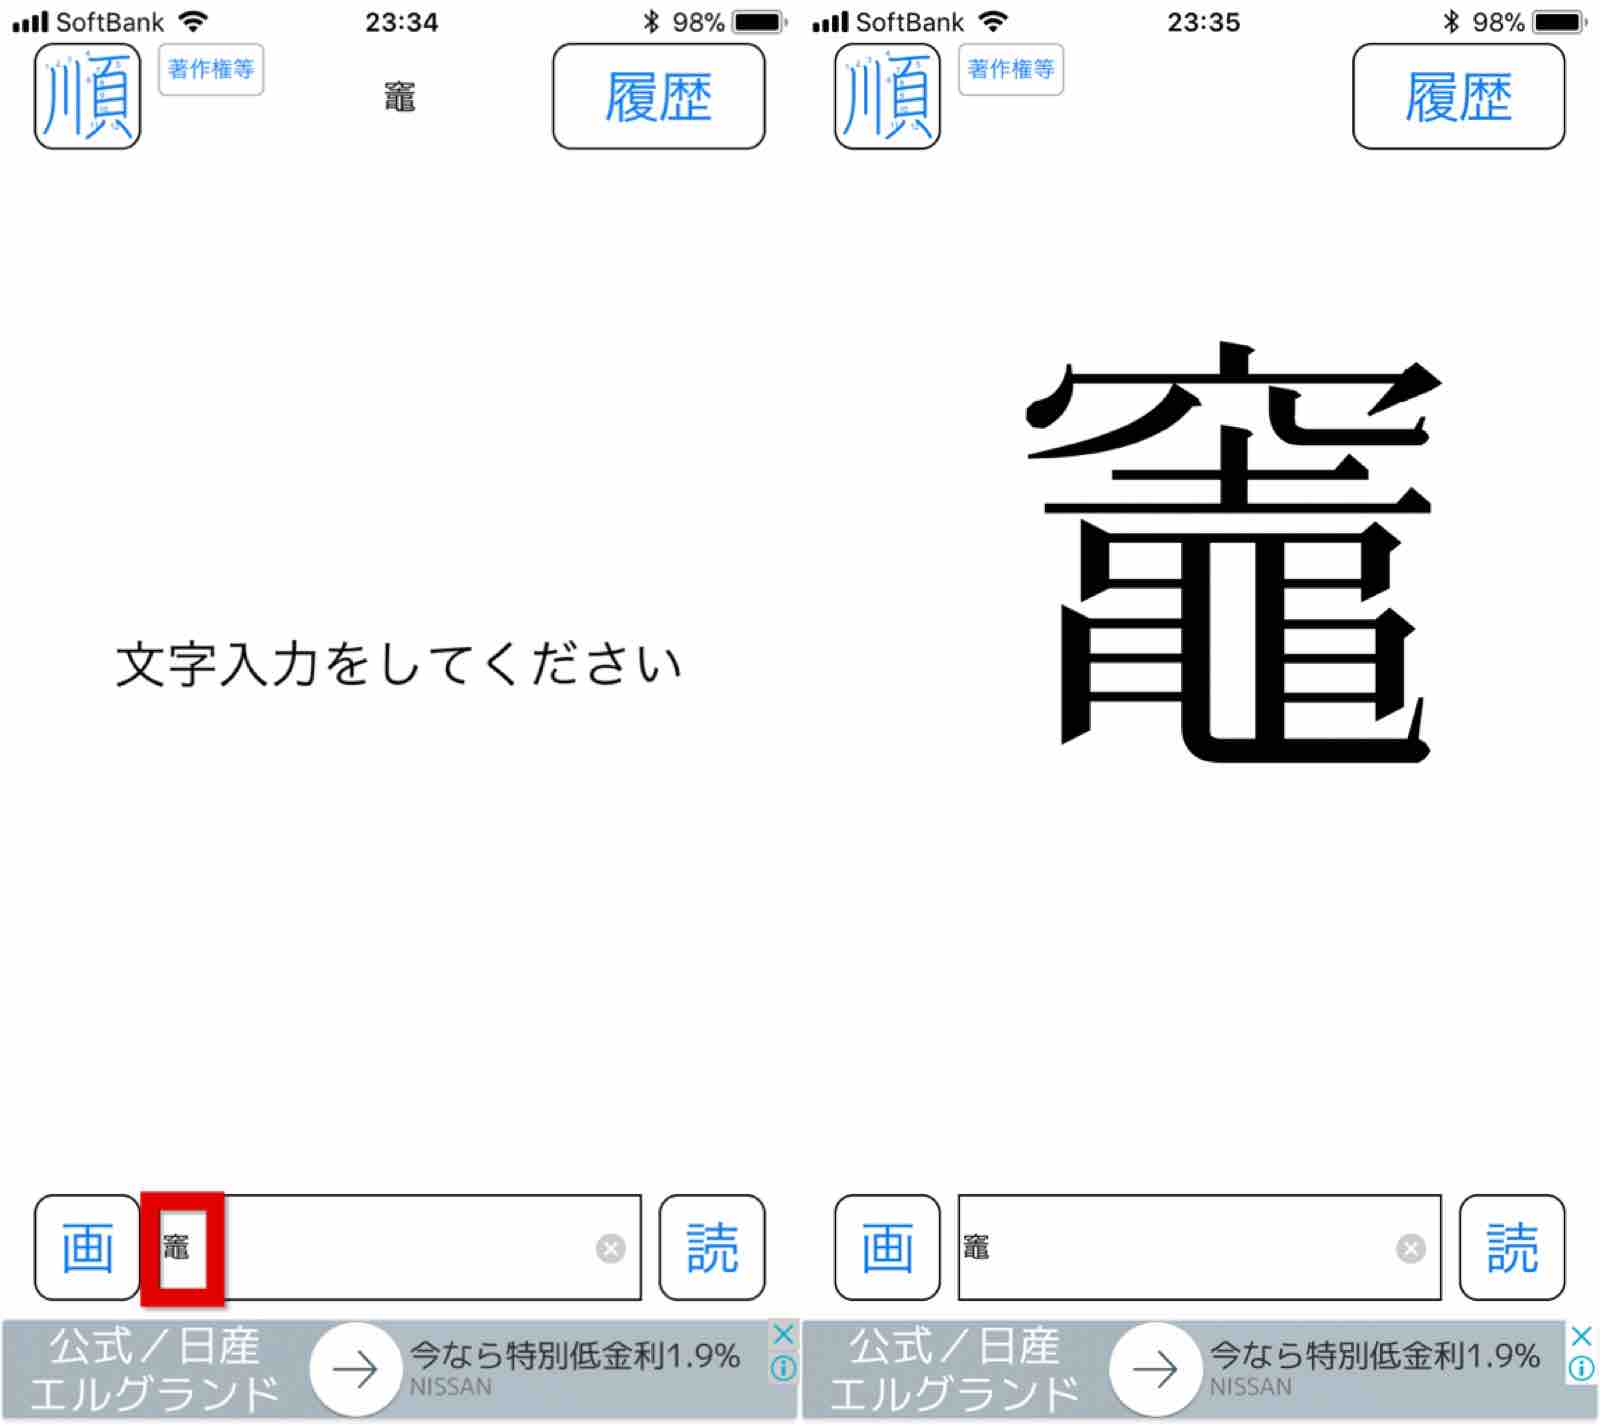 難しい漢字の読み方や正確な書き方がわからない時に便利なアプリを紹介します Happychappyblog